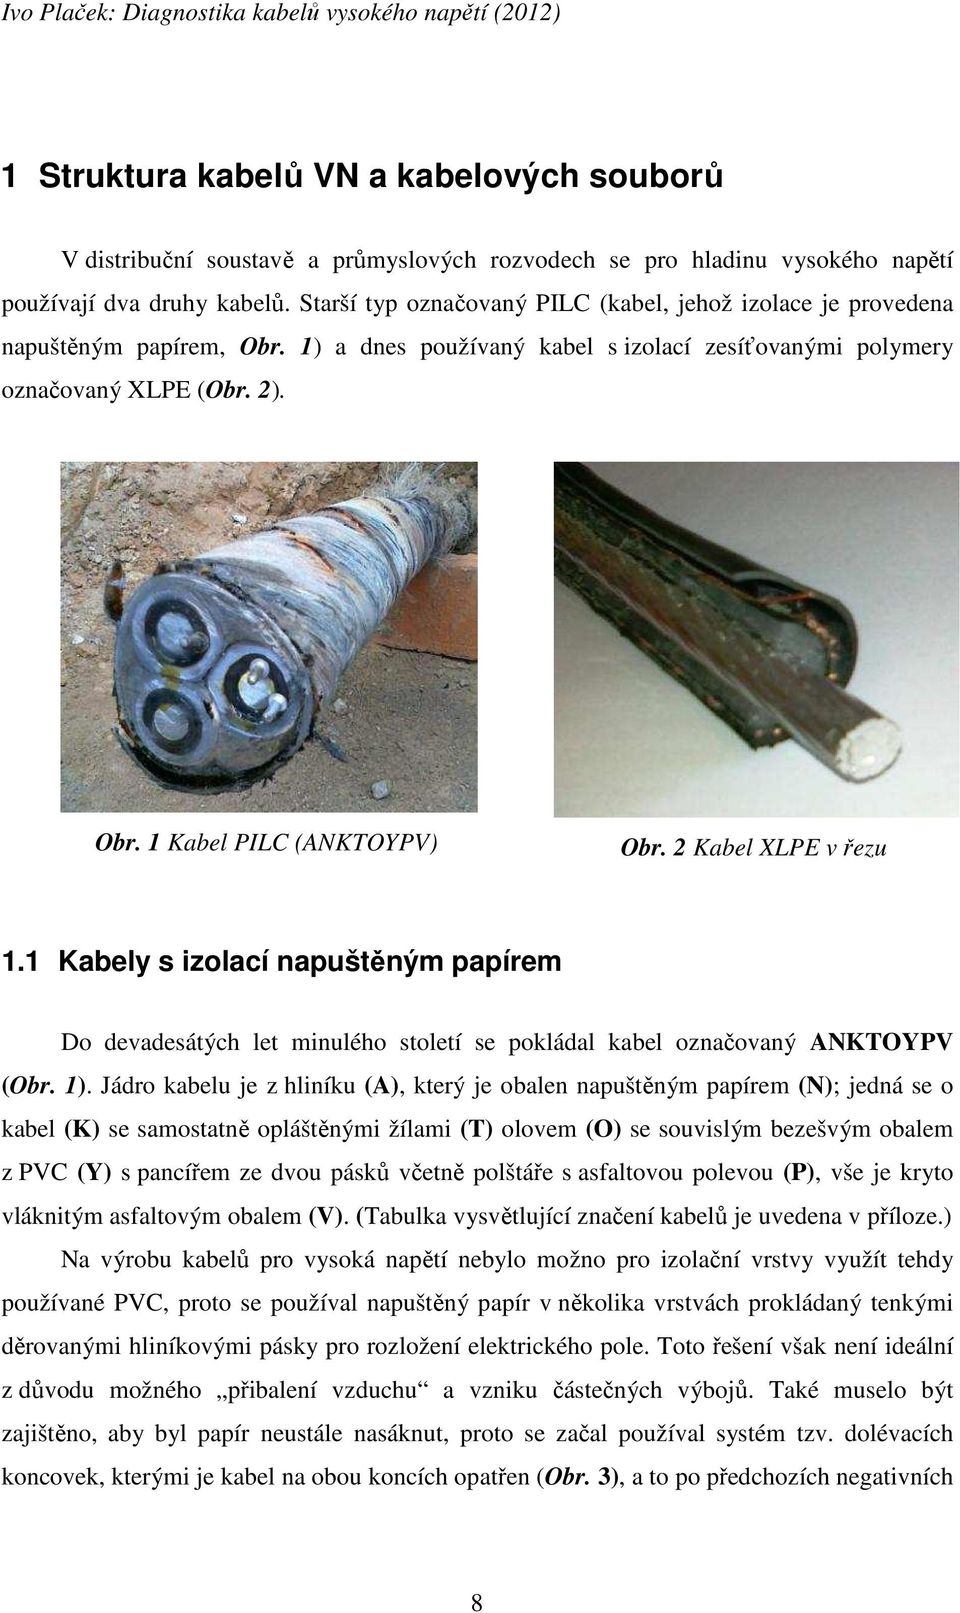 2 Kabel XLPE v řezu 1.1 Kabely s izolací napuštěným papírem Do devadesátých let minulého století se pokládal kabel označovaný ANKTOYPV (Obr. 1).